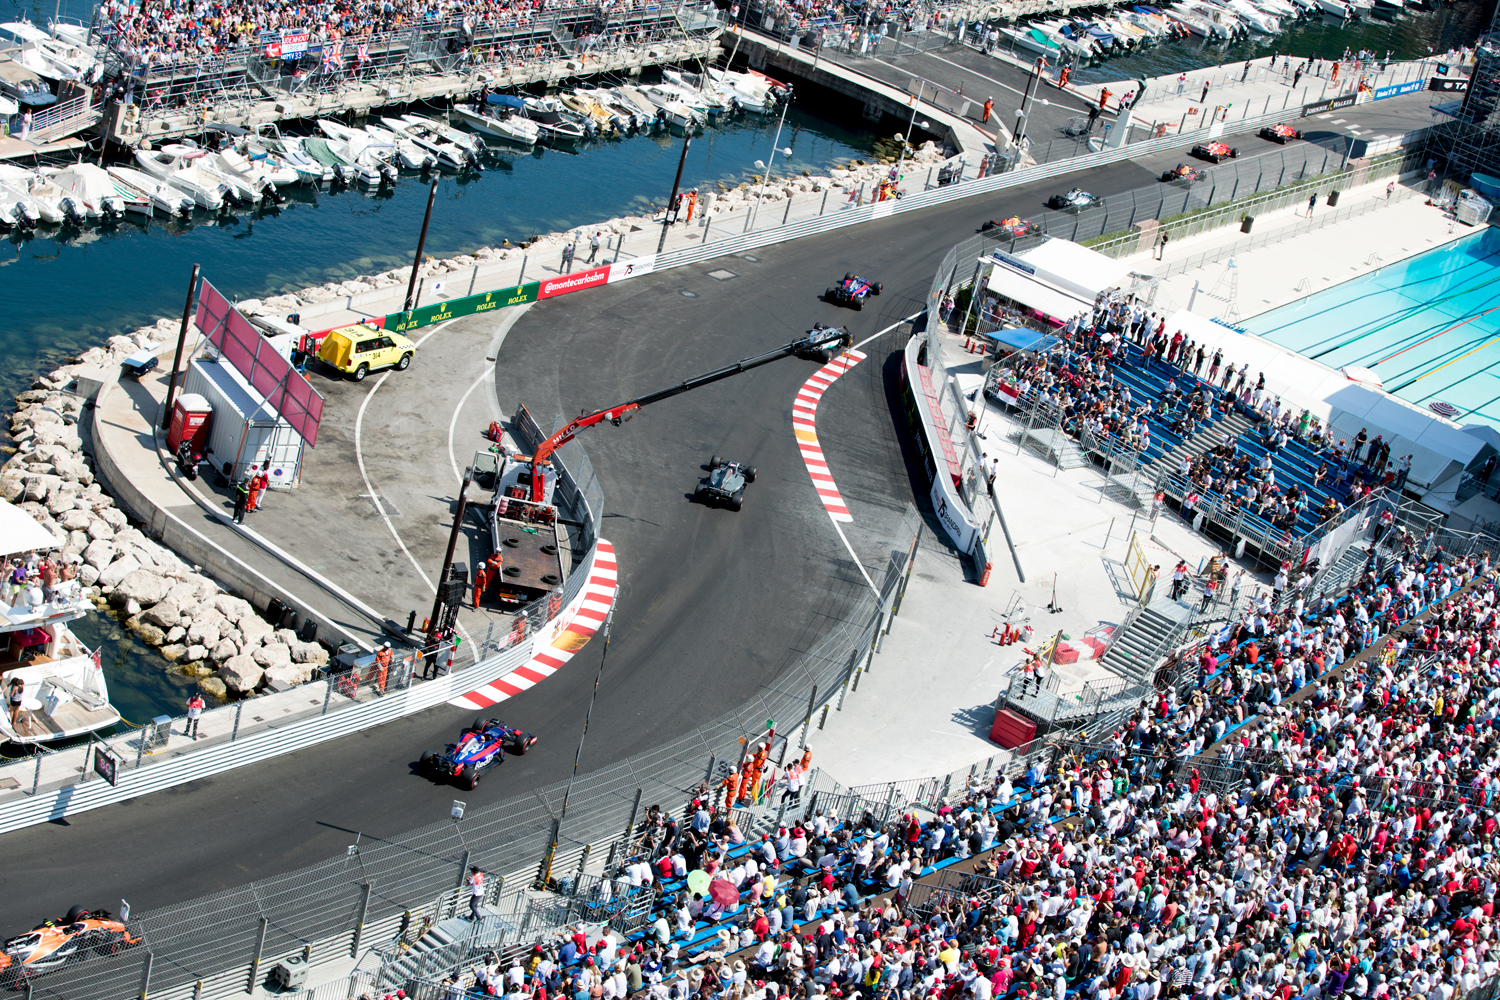 Ultimate Monaco Grand Prix experience grandstand seats, a super yacht